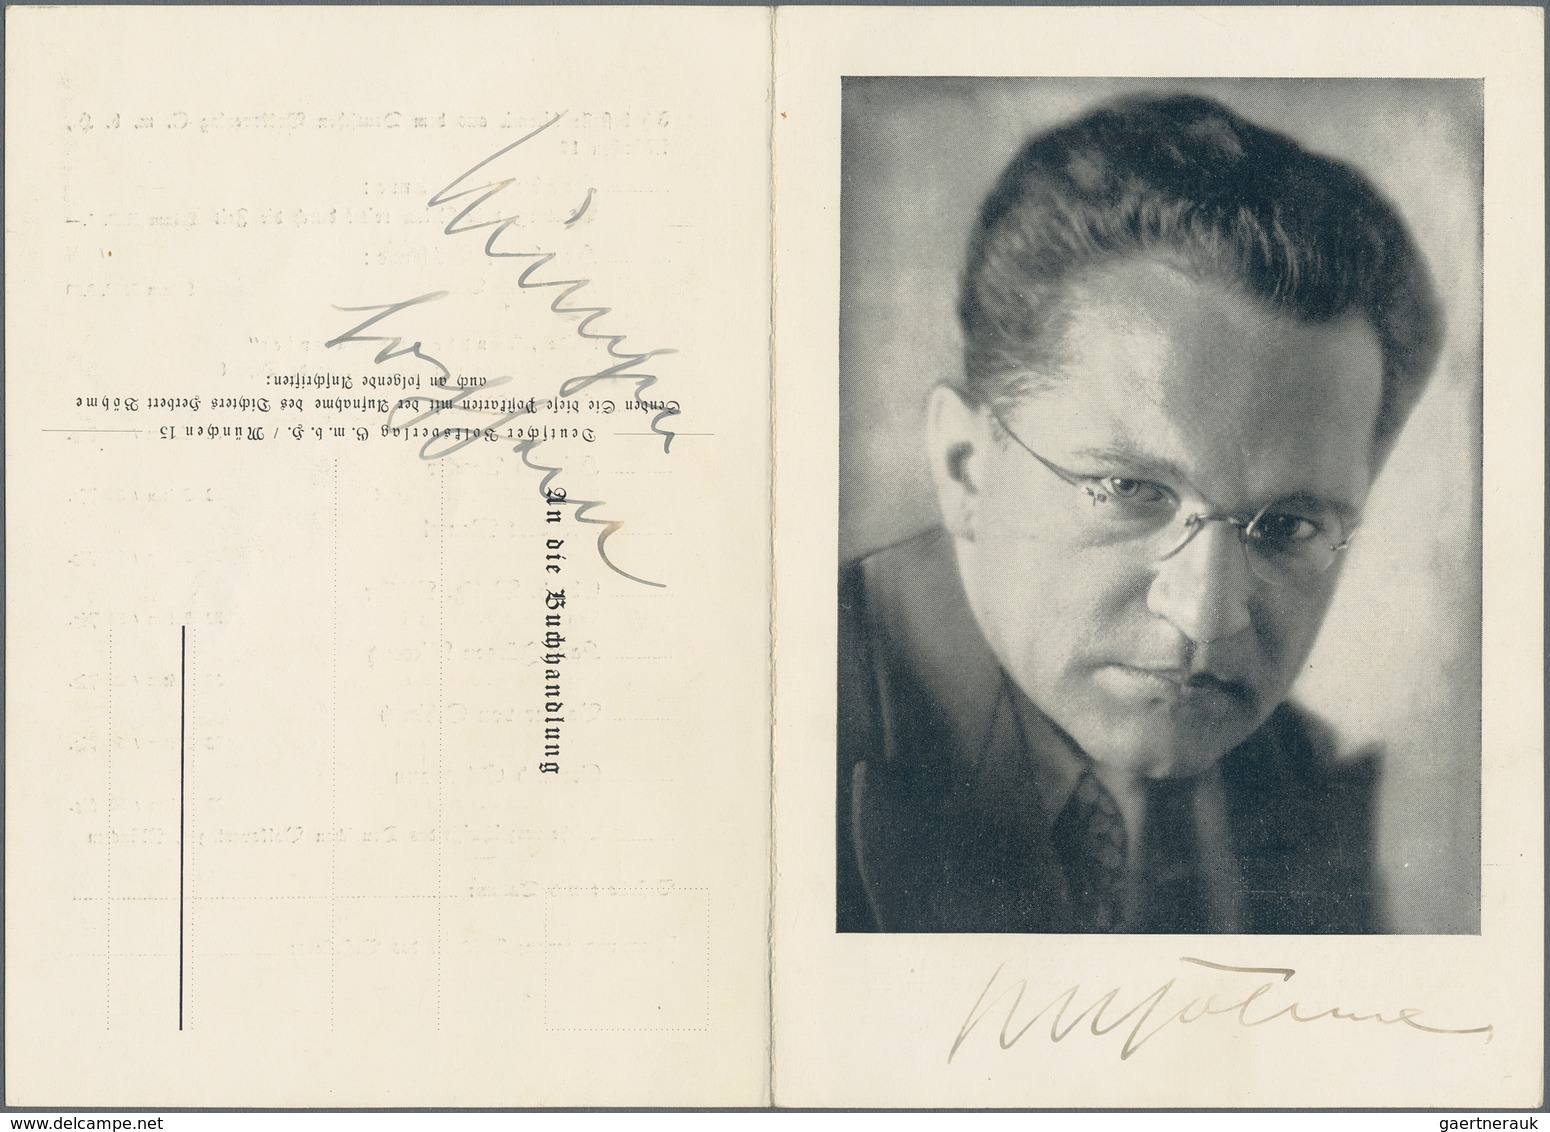 Ansichtskarten: Propaganda: 1939, Herbert BÖHME, NS-Dichter, Autogramm Auf Fotoklappkarte Und Eigenh - Parteien & Wahlen